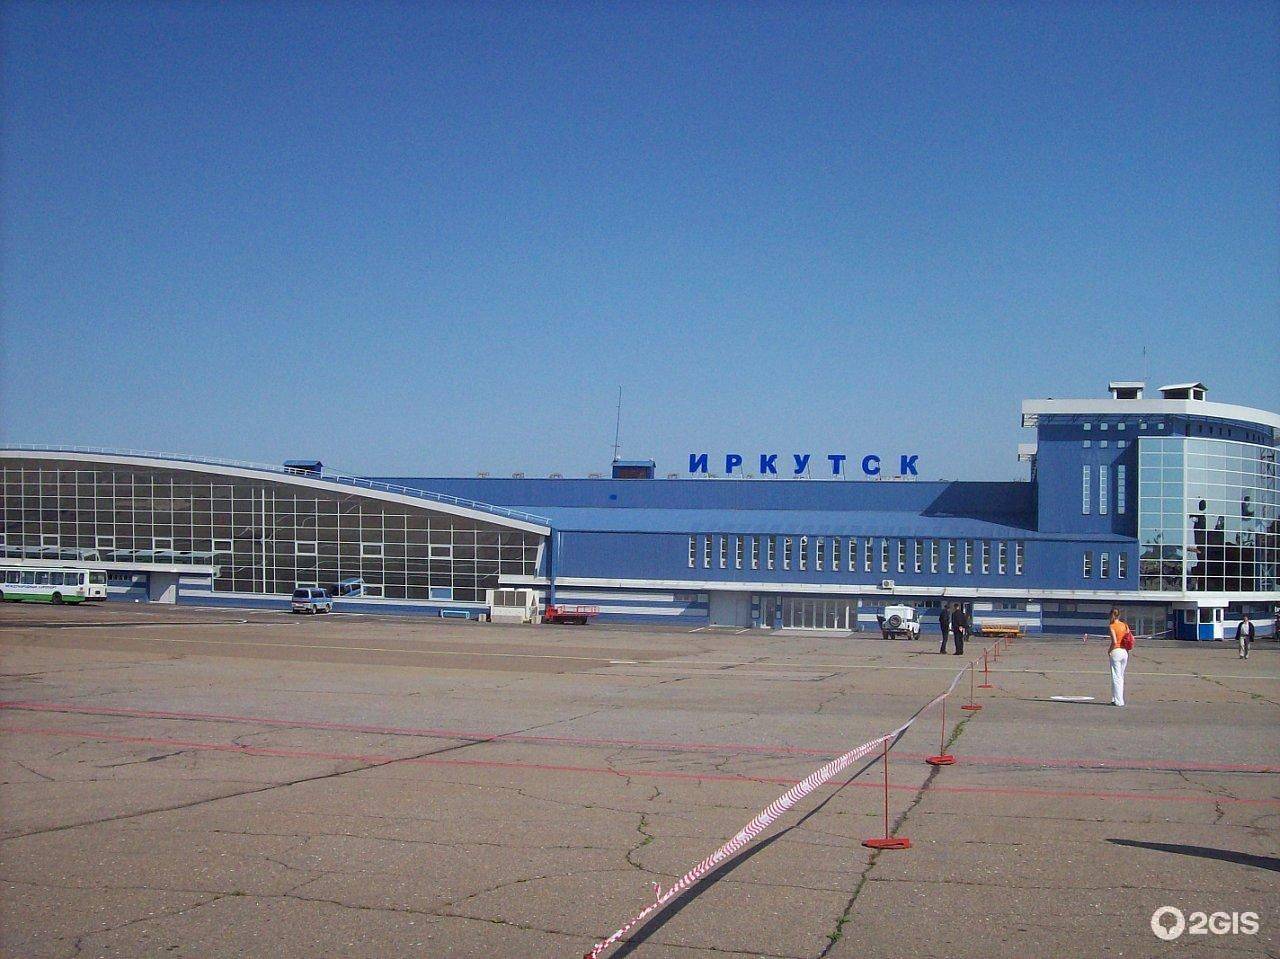 Аэропорт иркутск (ikt) - расписание рейсов, авиабилеты